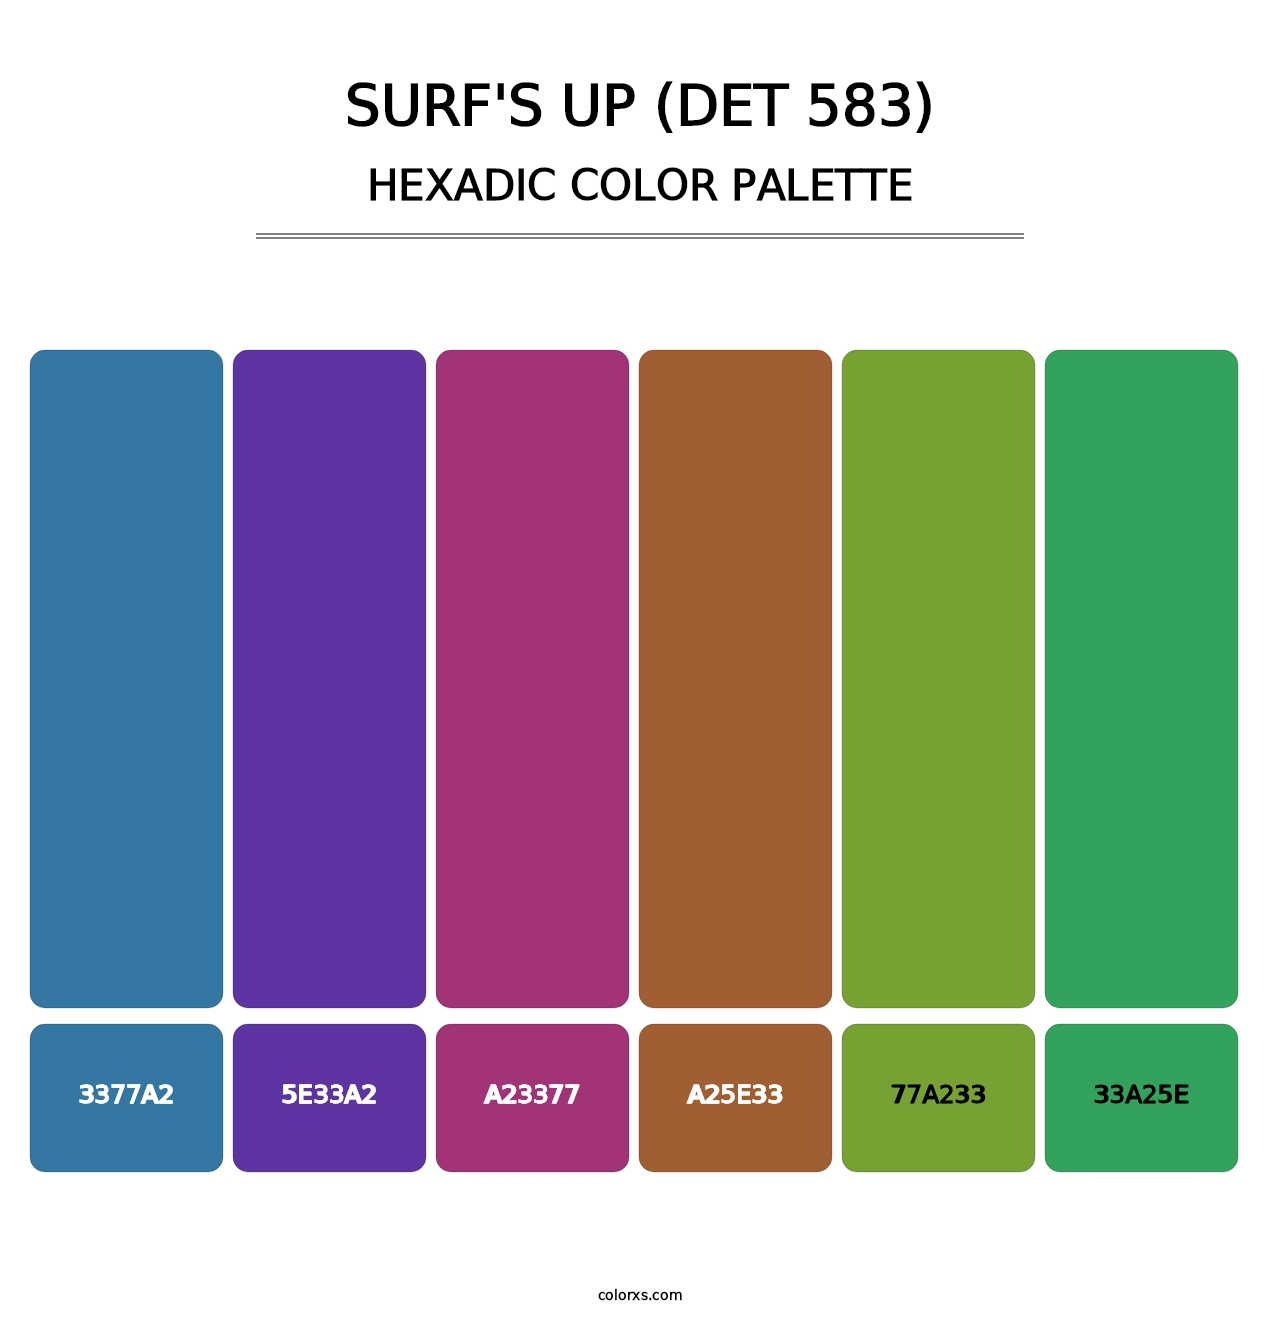 Surf's Up (DET 583) - Hexadic Color Palette